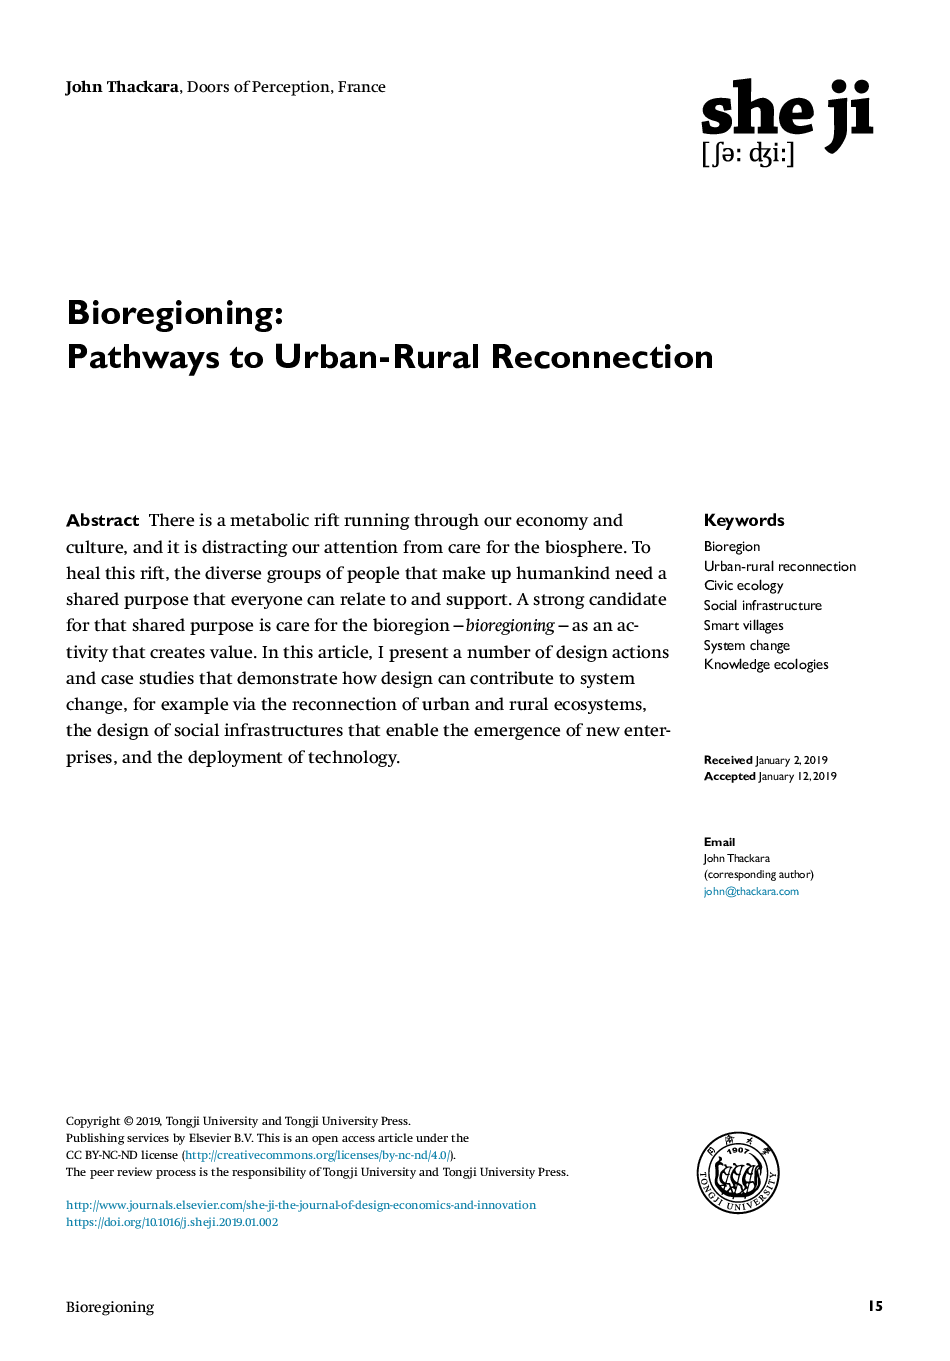 Bioregioning: Pathways to Urban-Rural Reconnection